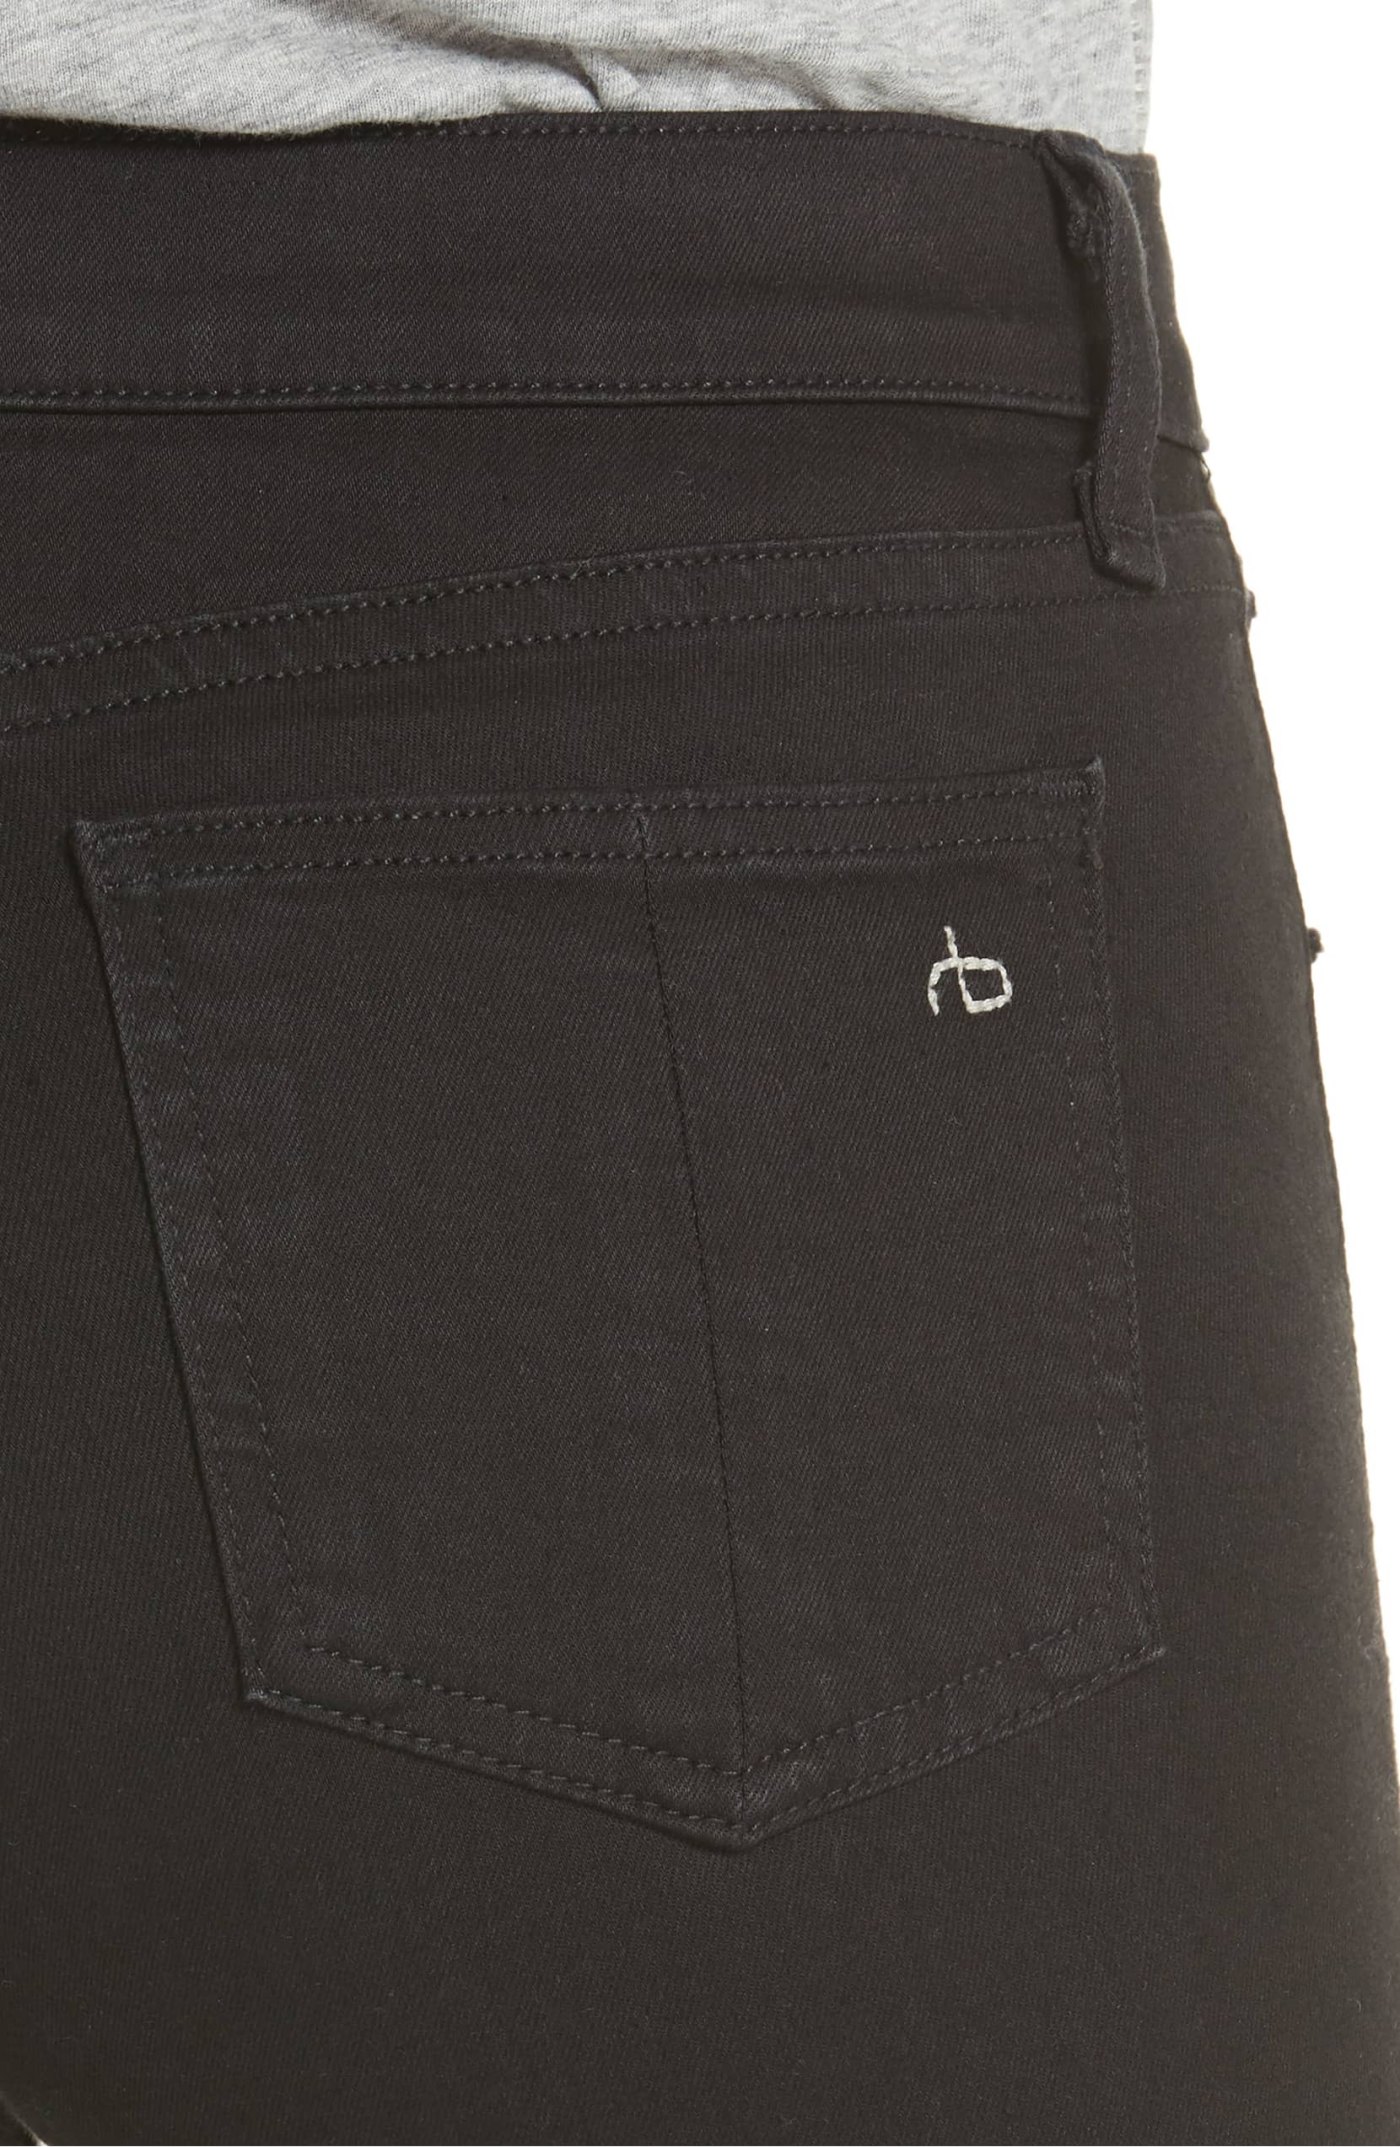 Shop Rag & Bone Leggings That Look Like Black Jeans | Us Weekly